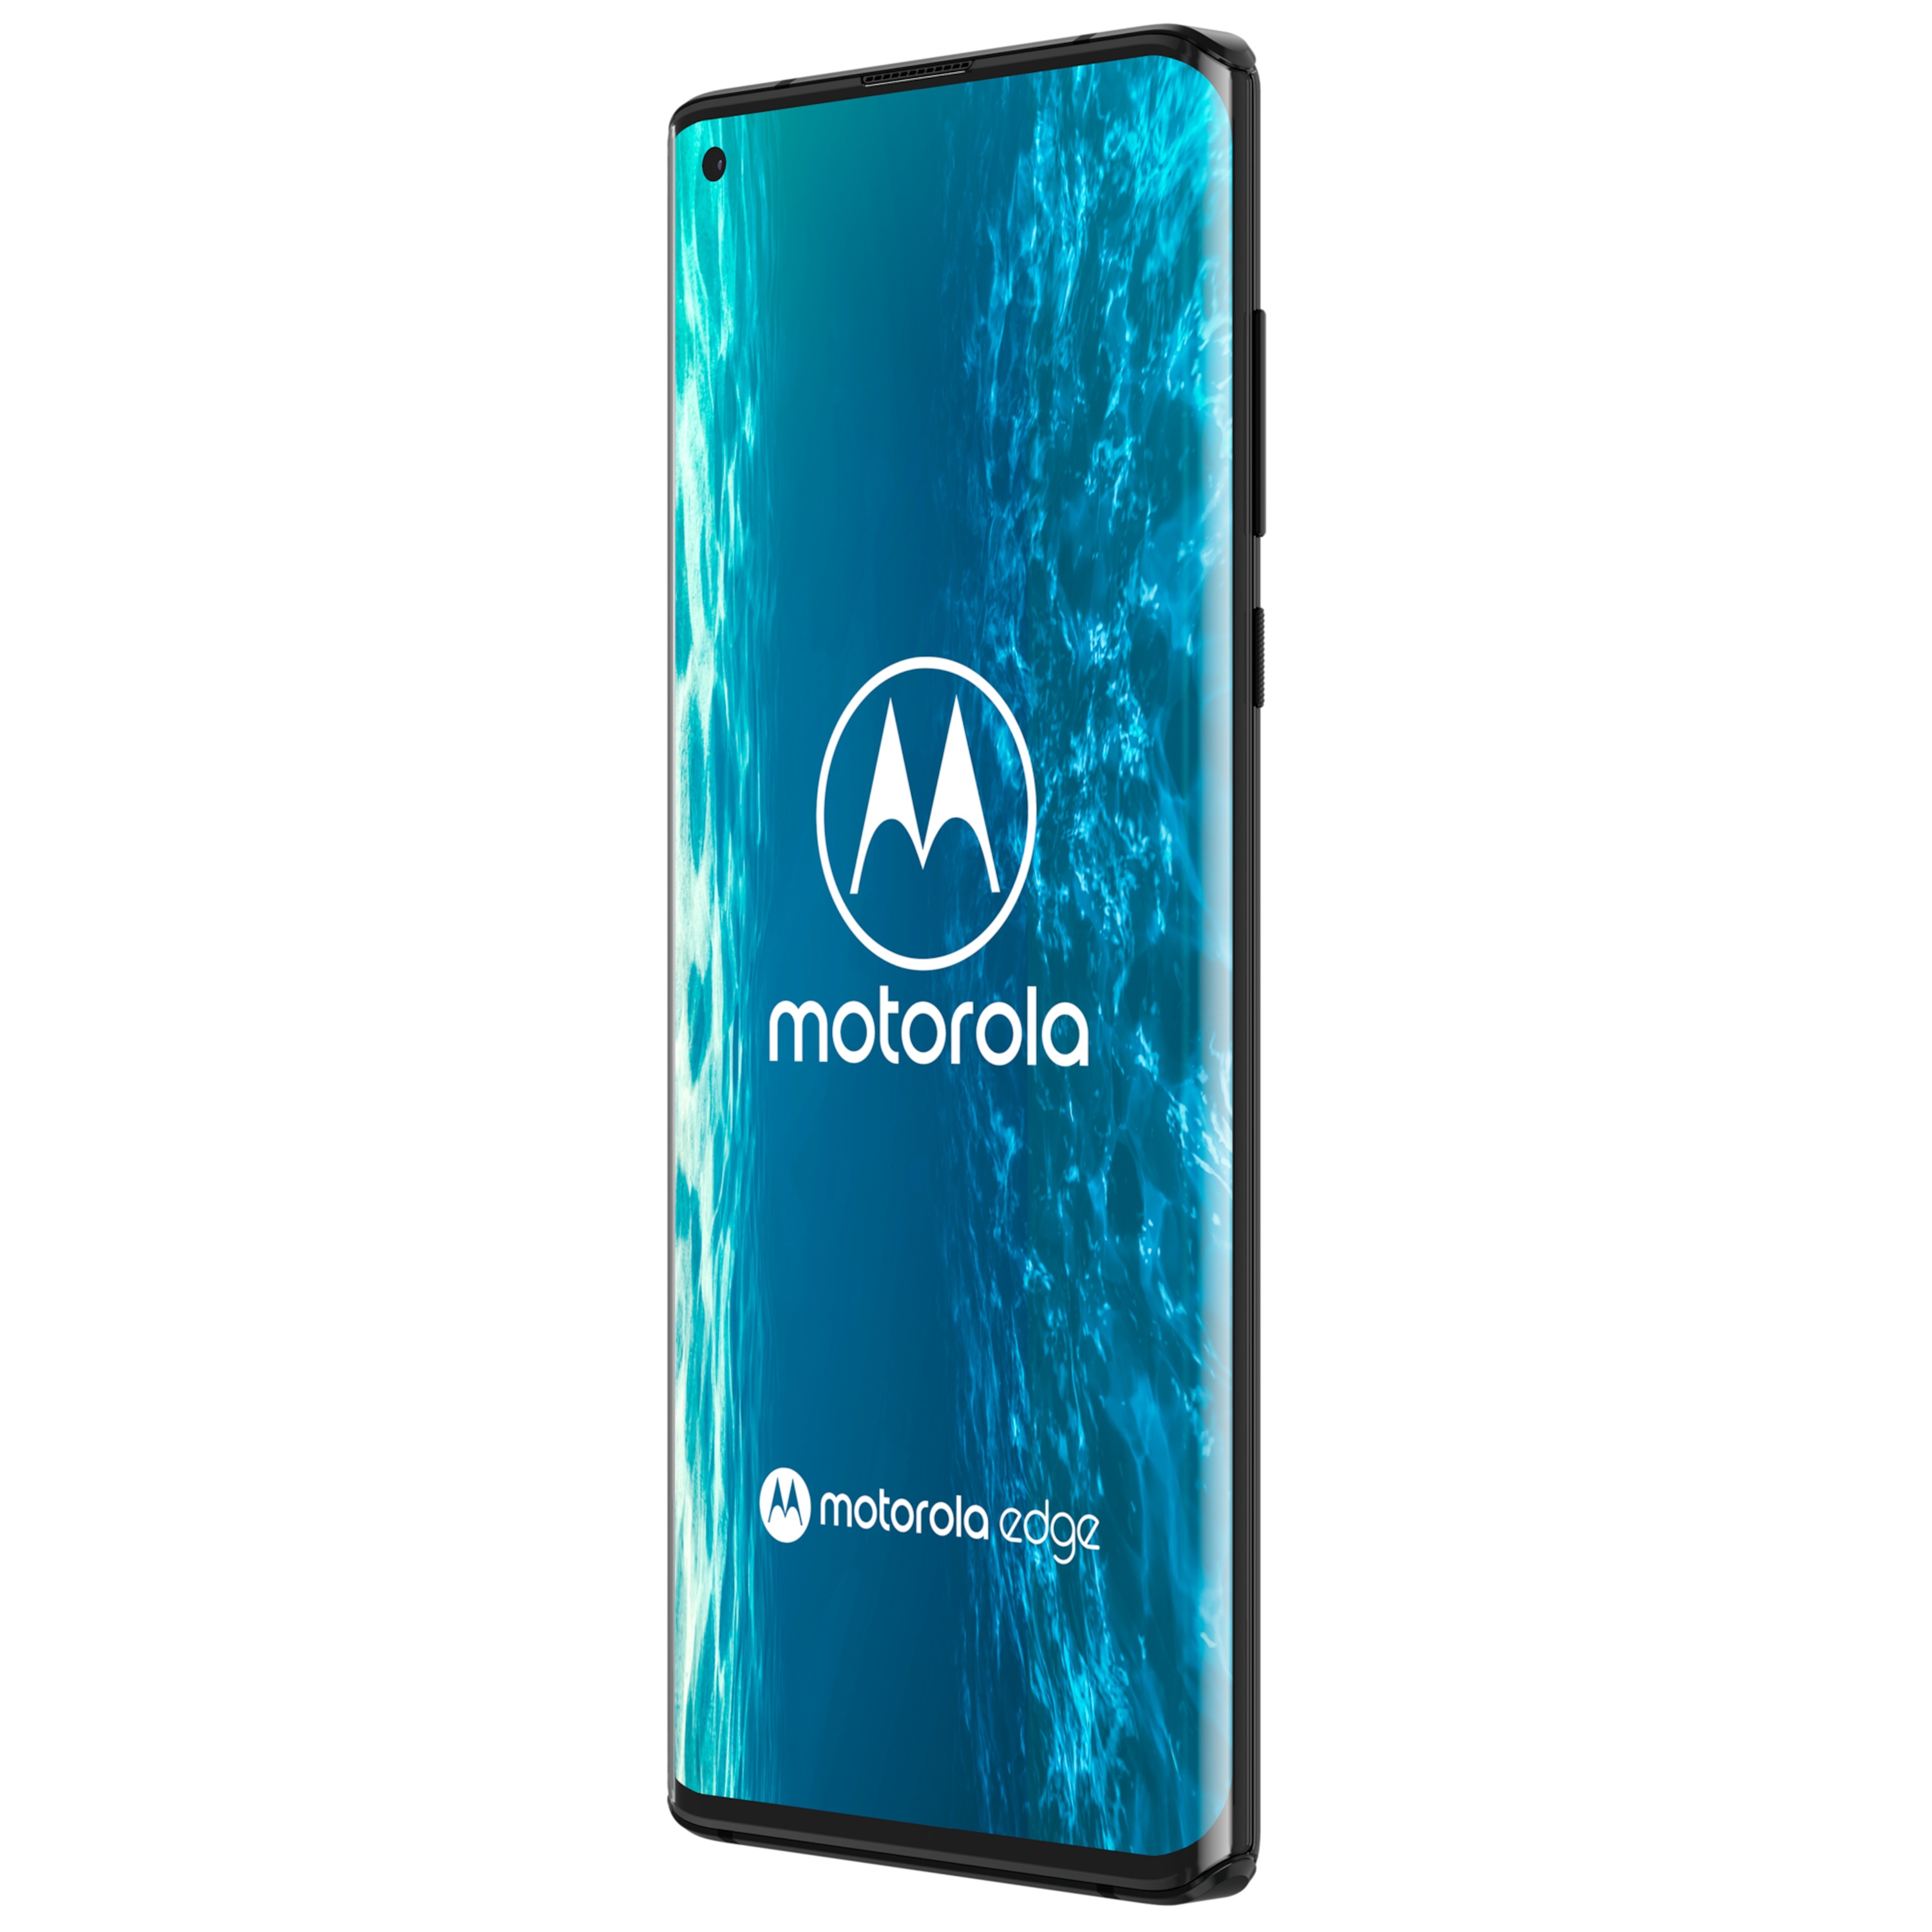 MOTOROLA egde, Smartphone, 16,94 cm (6,67") FHD+ Display, Android™ 10, 128 GB Speicher, 6 GB Arbeitsspeicher, Octa-Core-Prozessor, Bluetooth® 5.1, 5G LTE